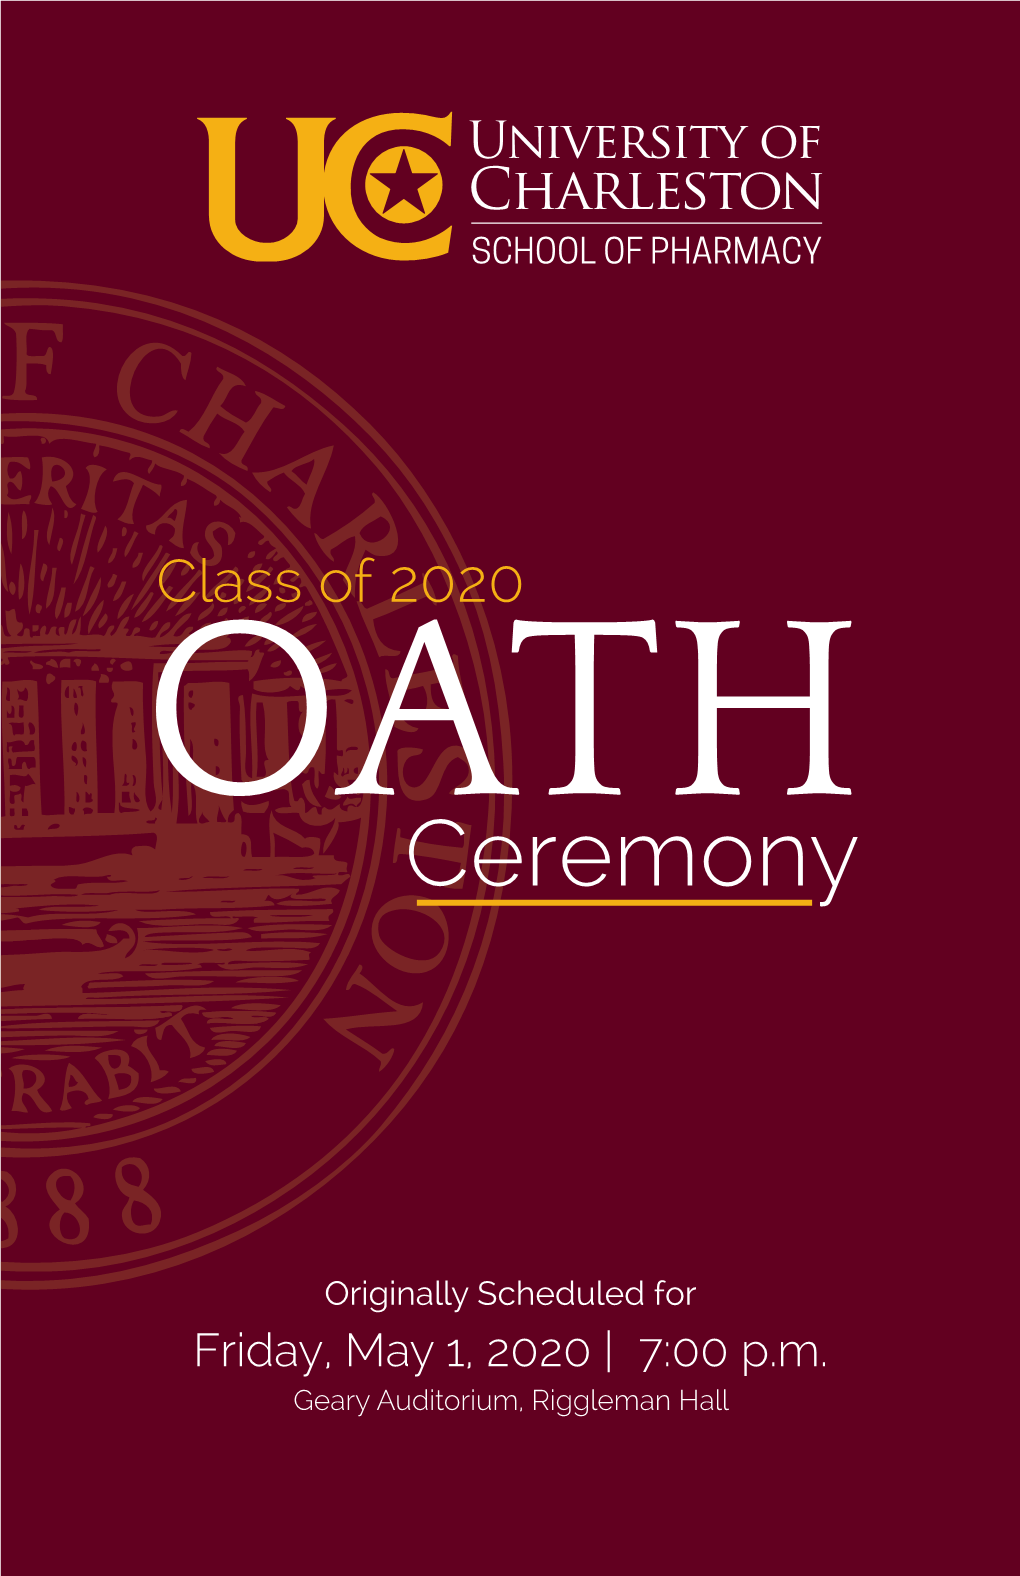 School of Pharmacy Oath Ceremony